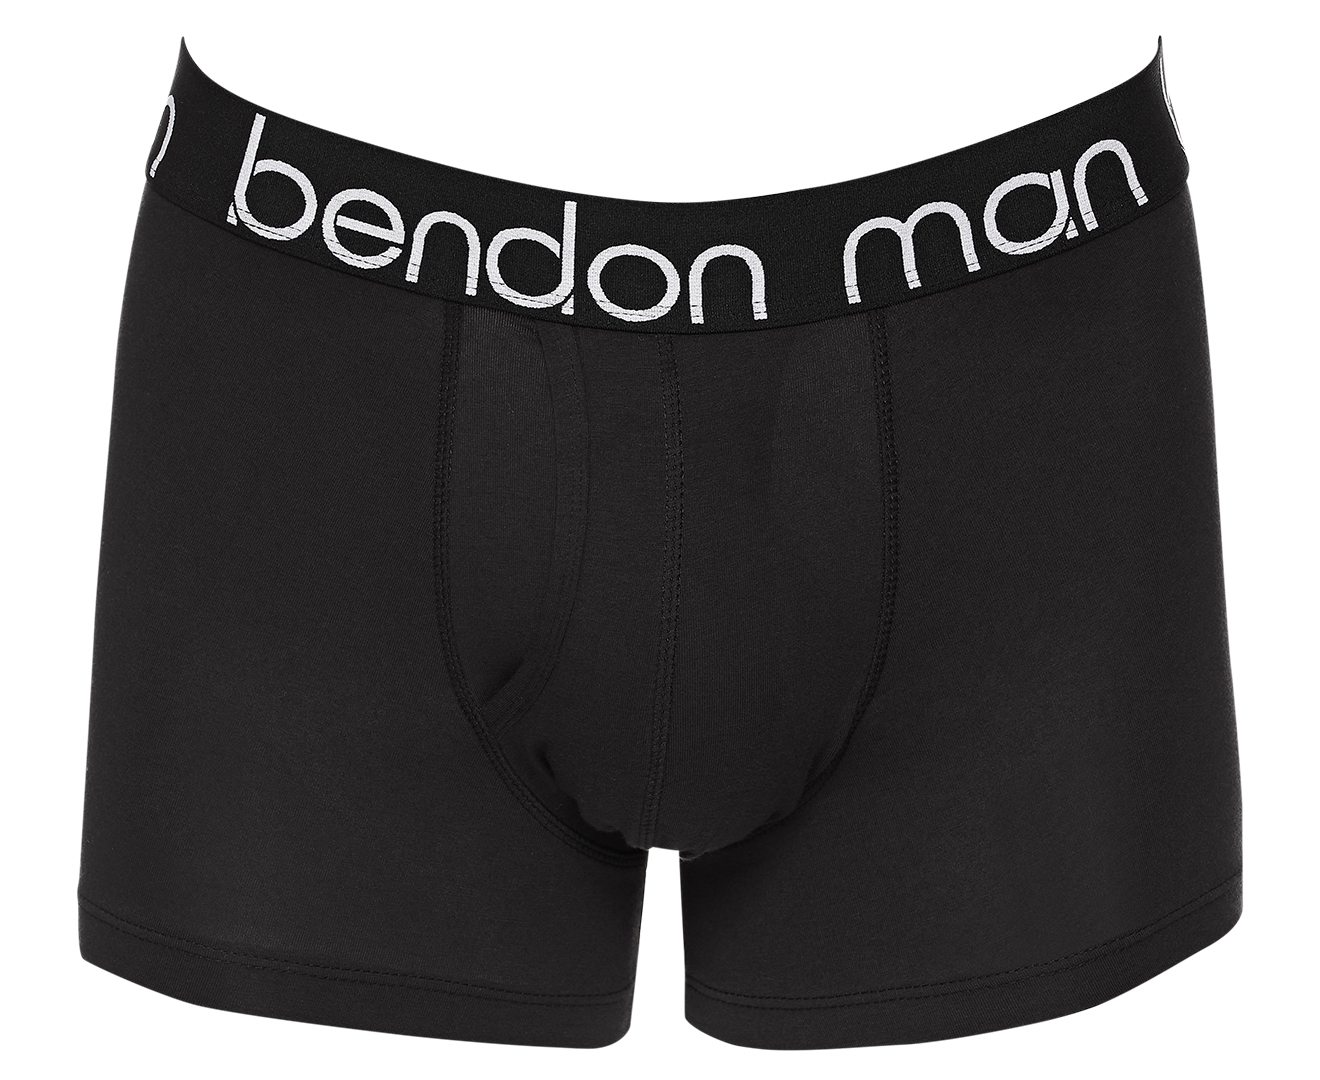 Black Bendon Man Cotton Texture Mens Trunk